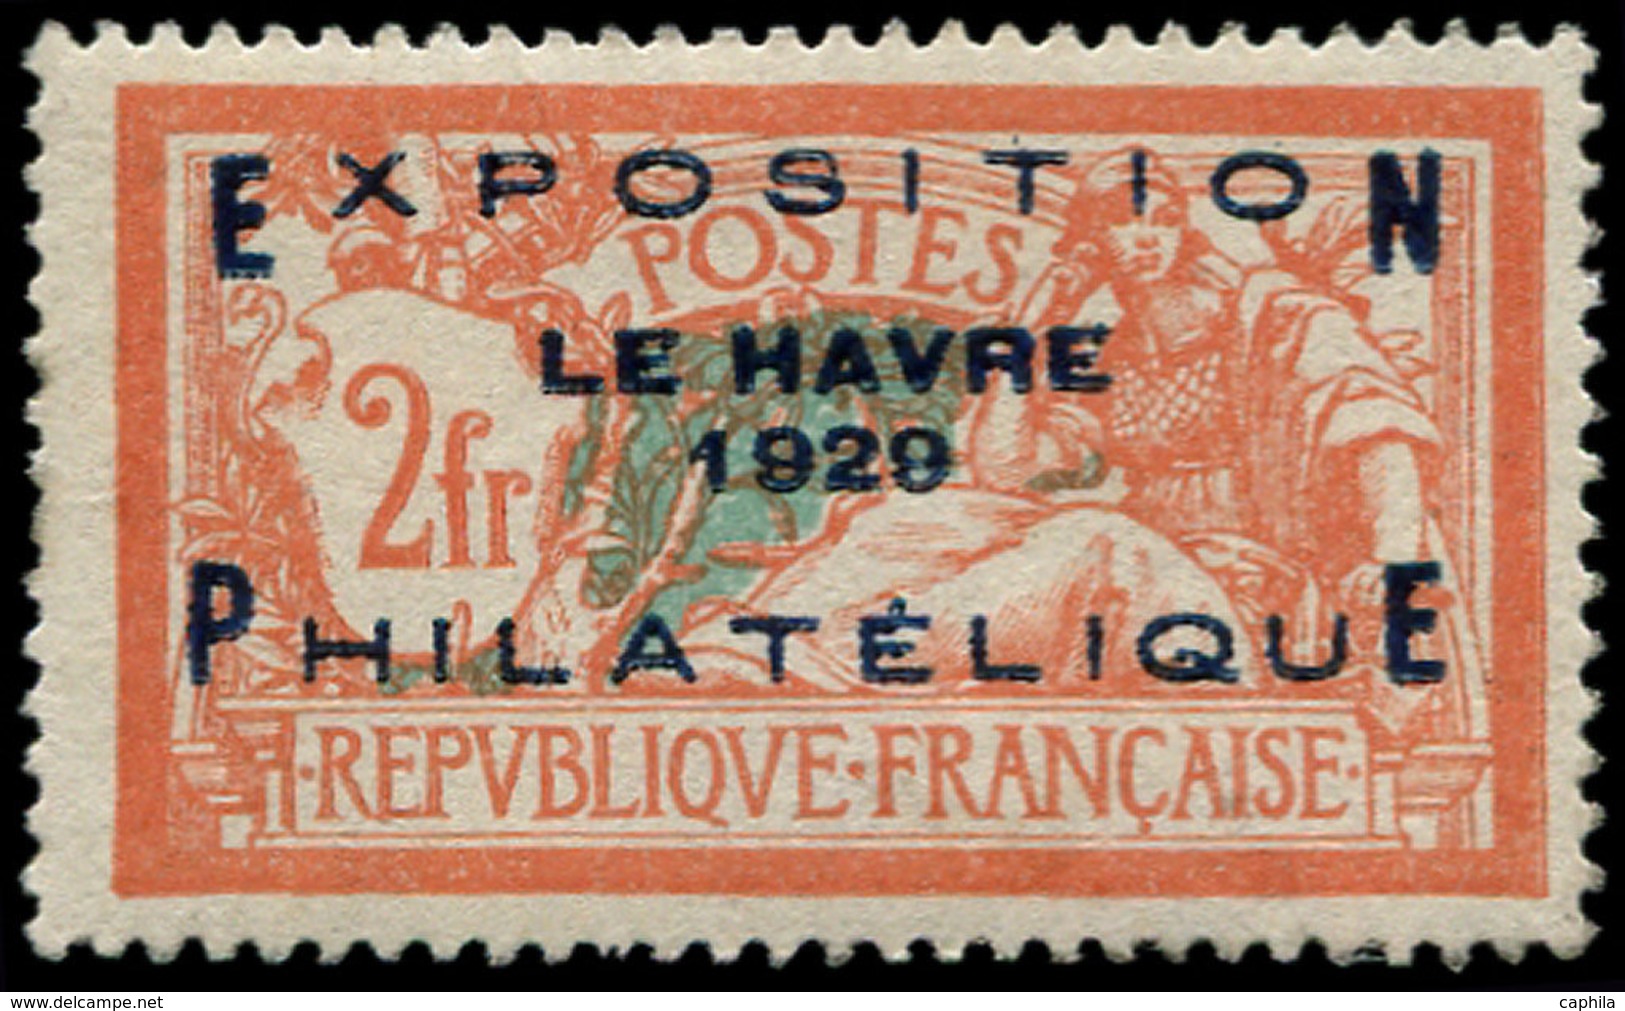 * FRANCE - Poste - 257A, Expo Du Havre - 1849-1850 Cérès